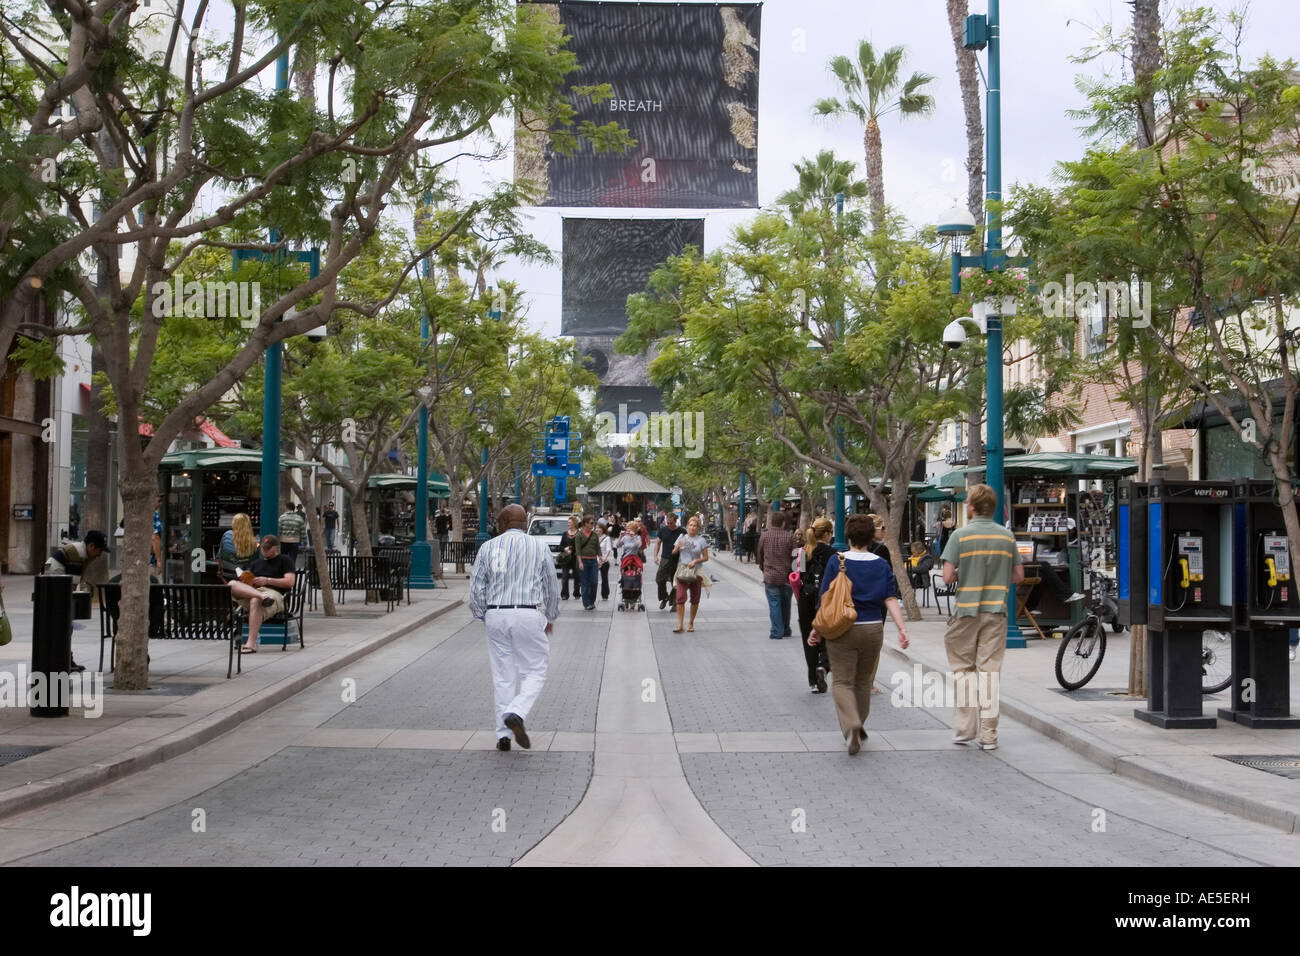 Les gens qui marchent et Third Street Promenade shopping dans une rue piétonne à Santa Monica en Californie Banque D'Images